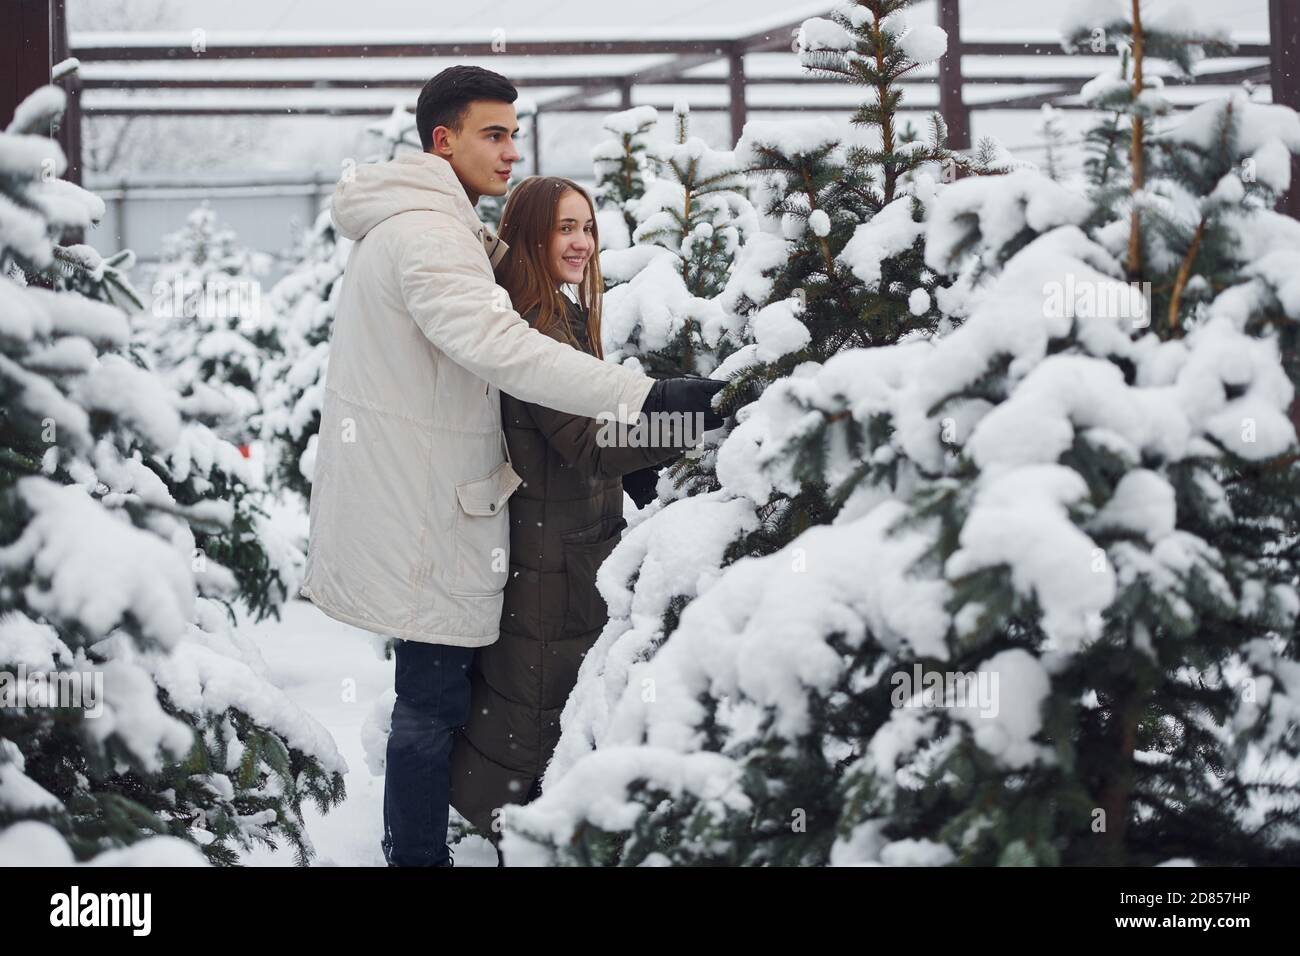 Una pareja joven y linda caminando al aire libre cerca de los abetos de Navidad frescos Foto de stock